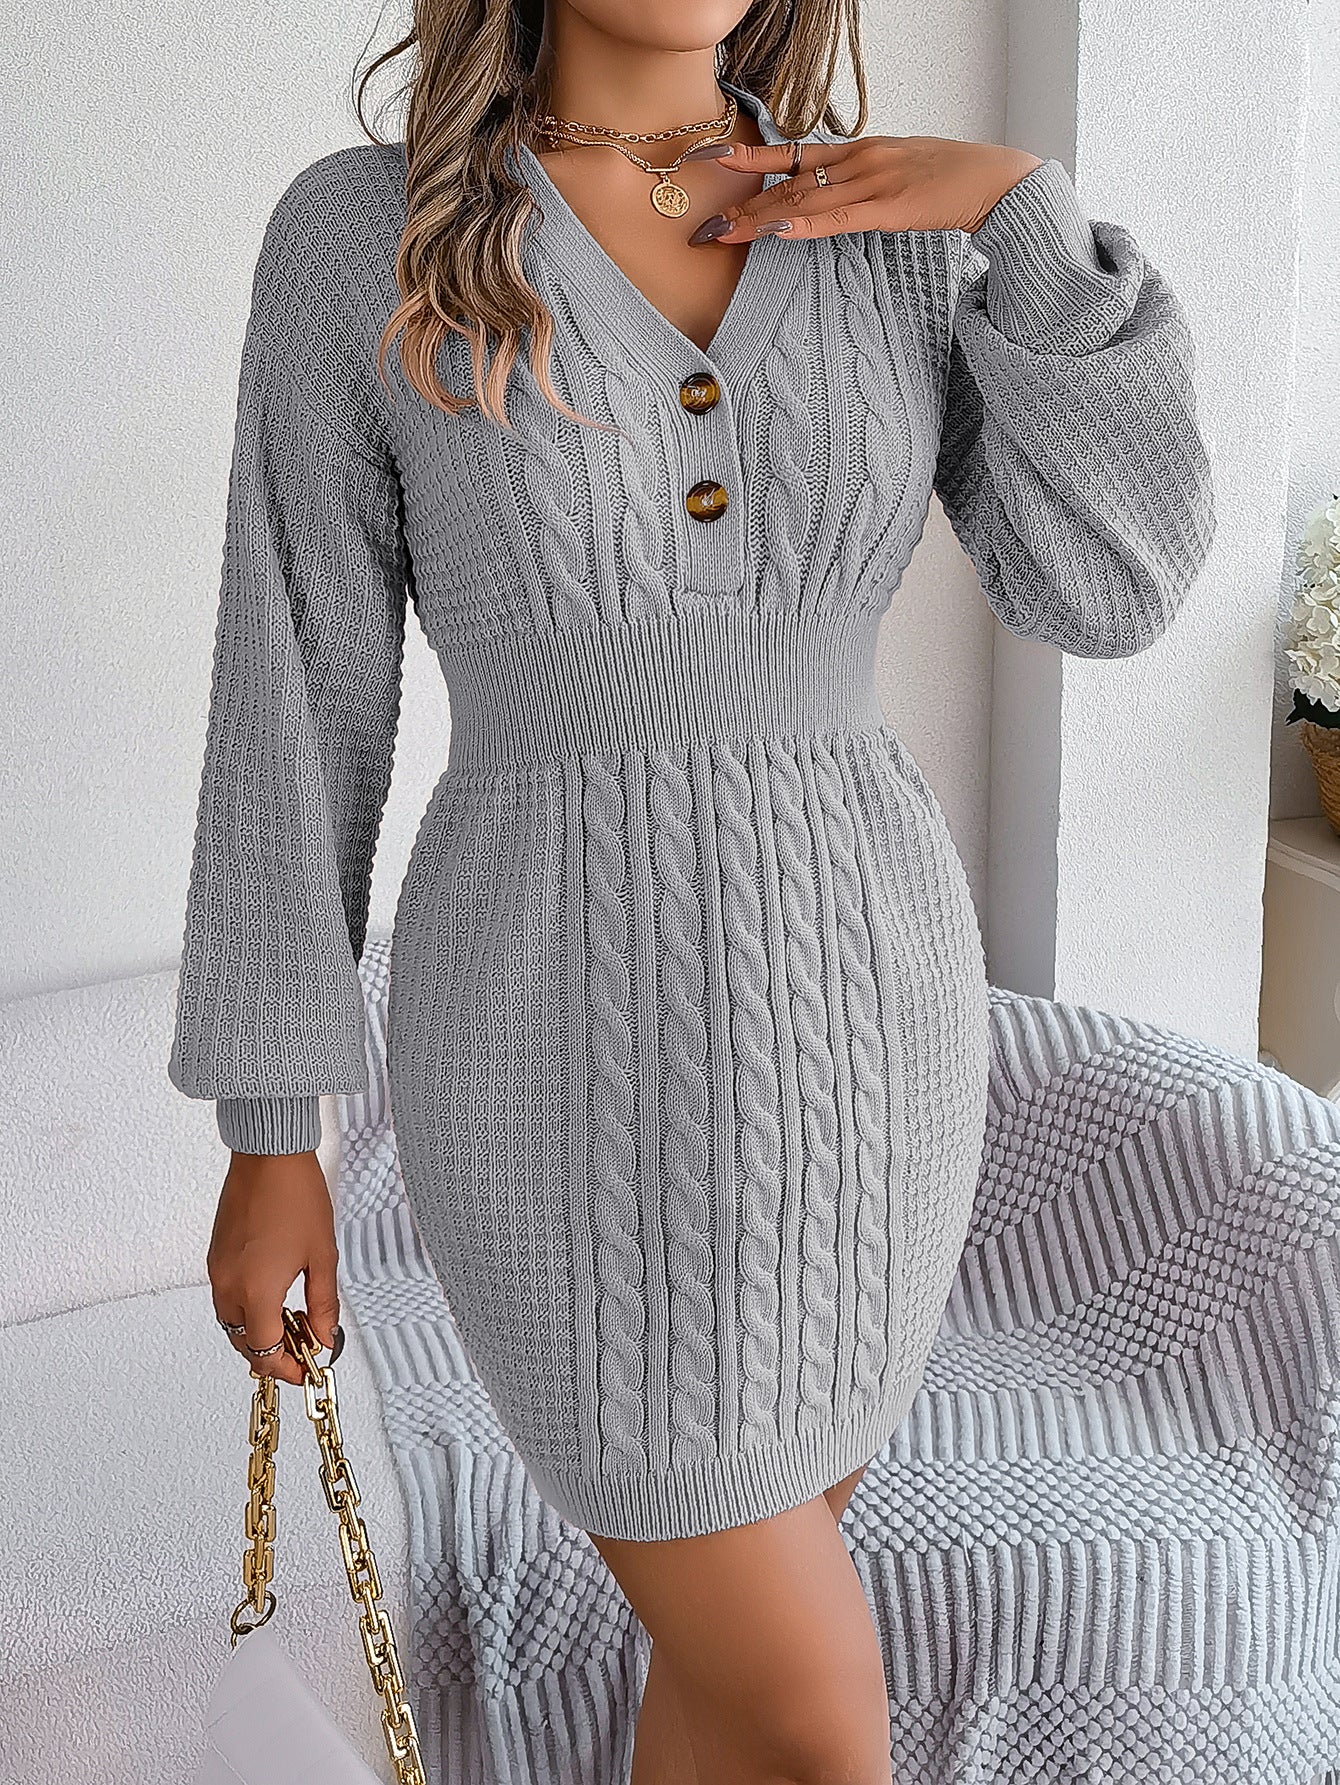 Waisted v-neck long sleeve sweater dress for women